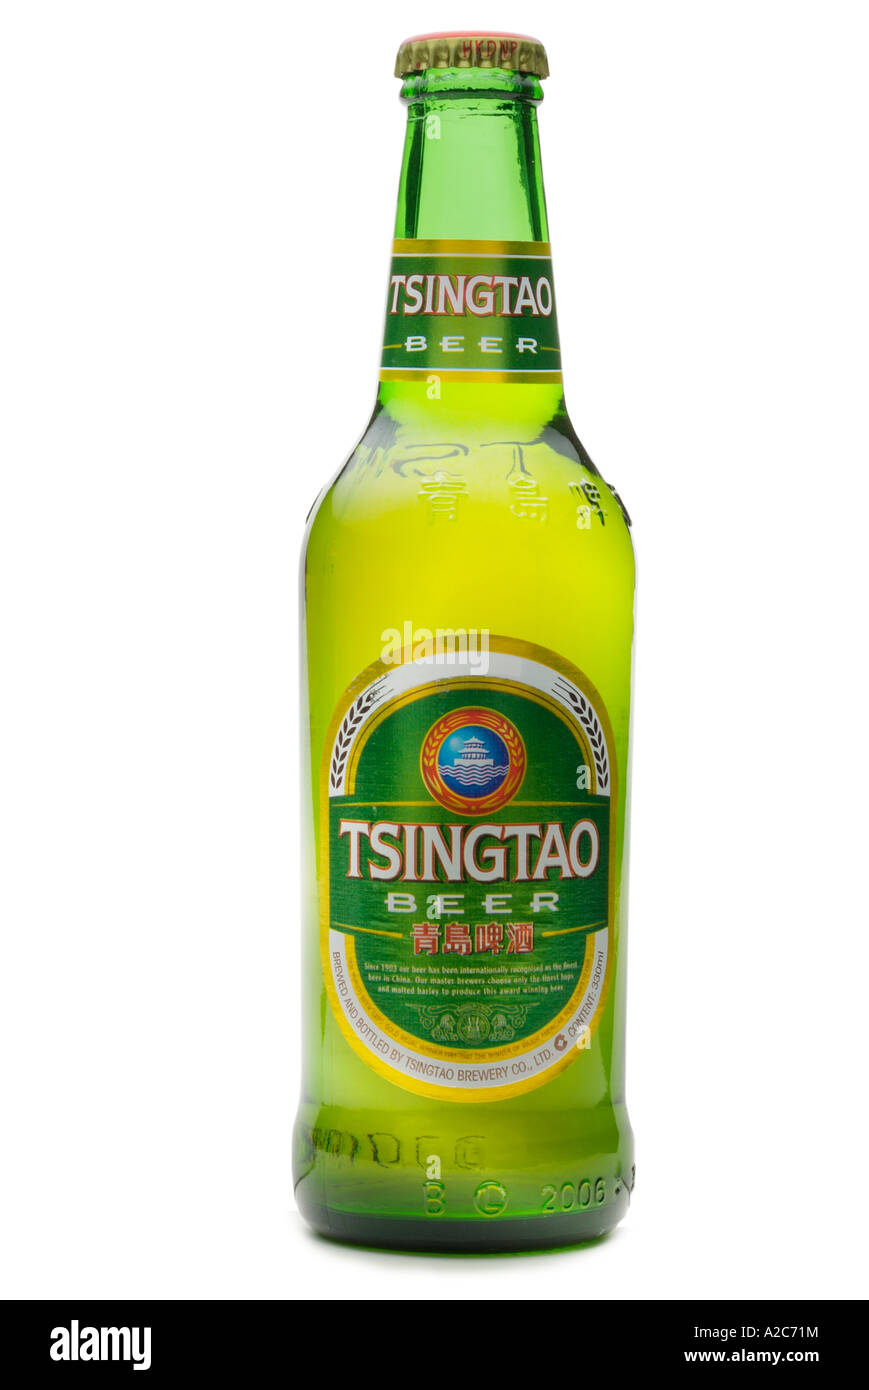 La bière Tsingtao Chine importés d'orient orient Chinois Asie extrême-orient  haut de la couronne le flacon en verre vert d'orge l'alcool Bière alcool  Photo Stock - Alamy